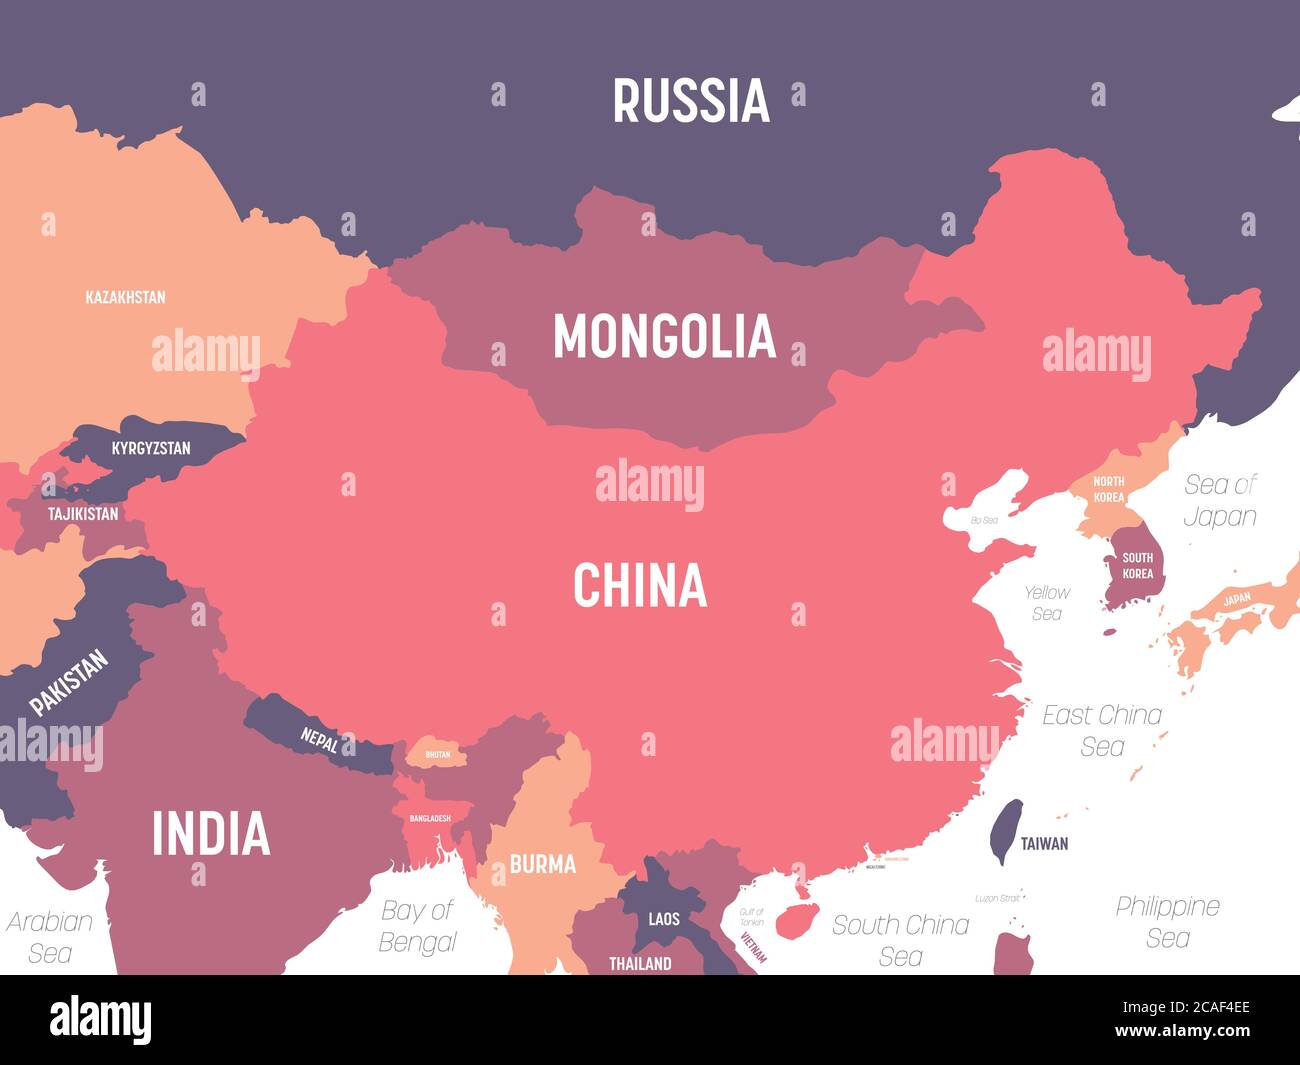 Carte de la Chine. Carte politique détaillée de la Chine et des pays voisins avec étiquetage des noms de pays, d'océan et de mer. Illustration de Vecteur